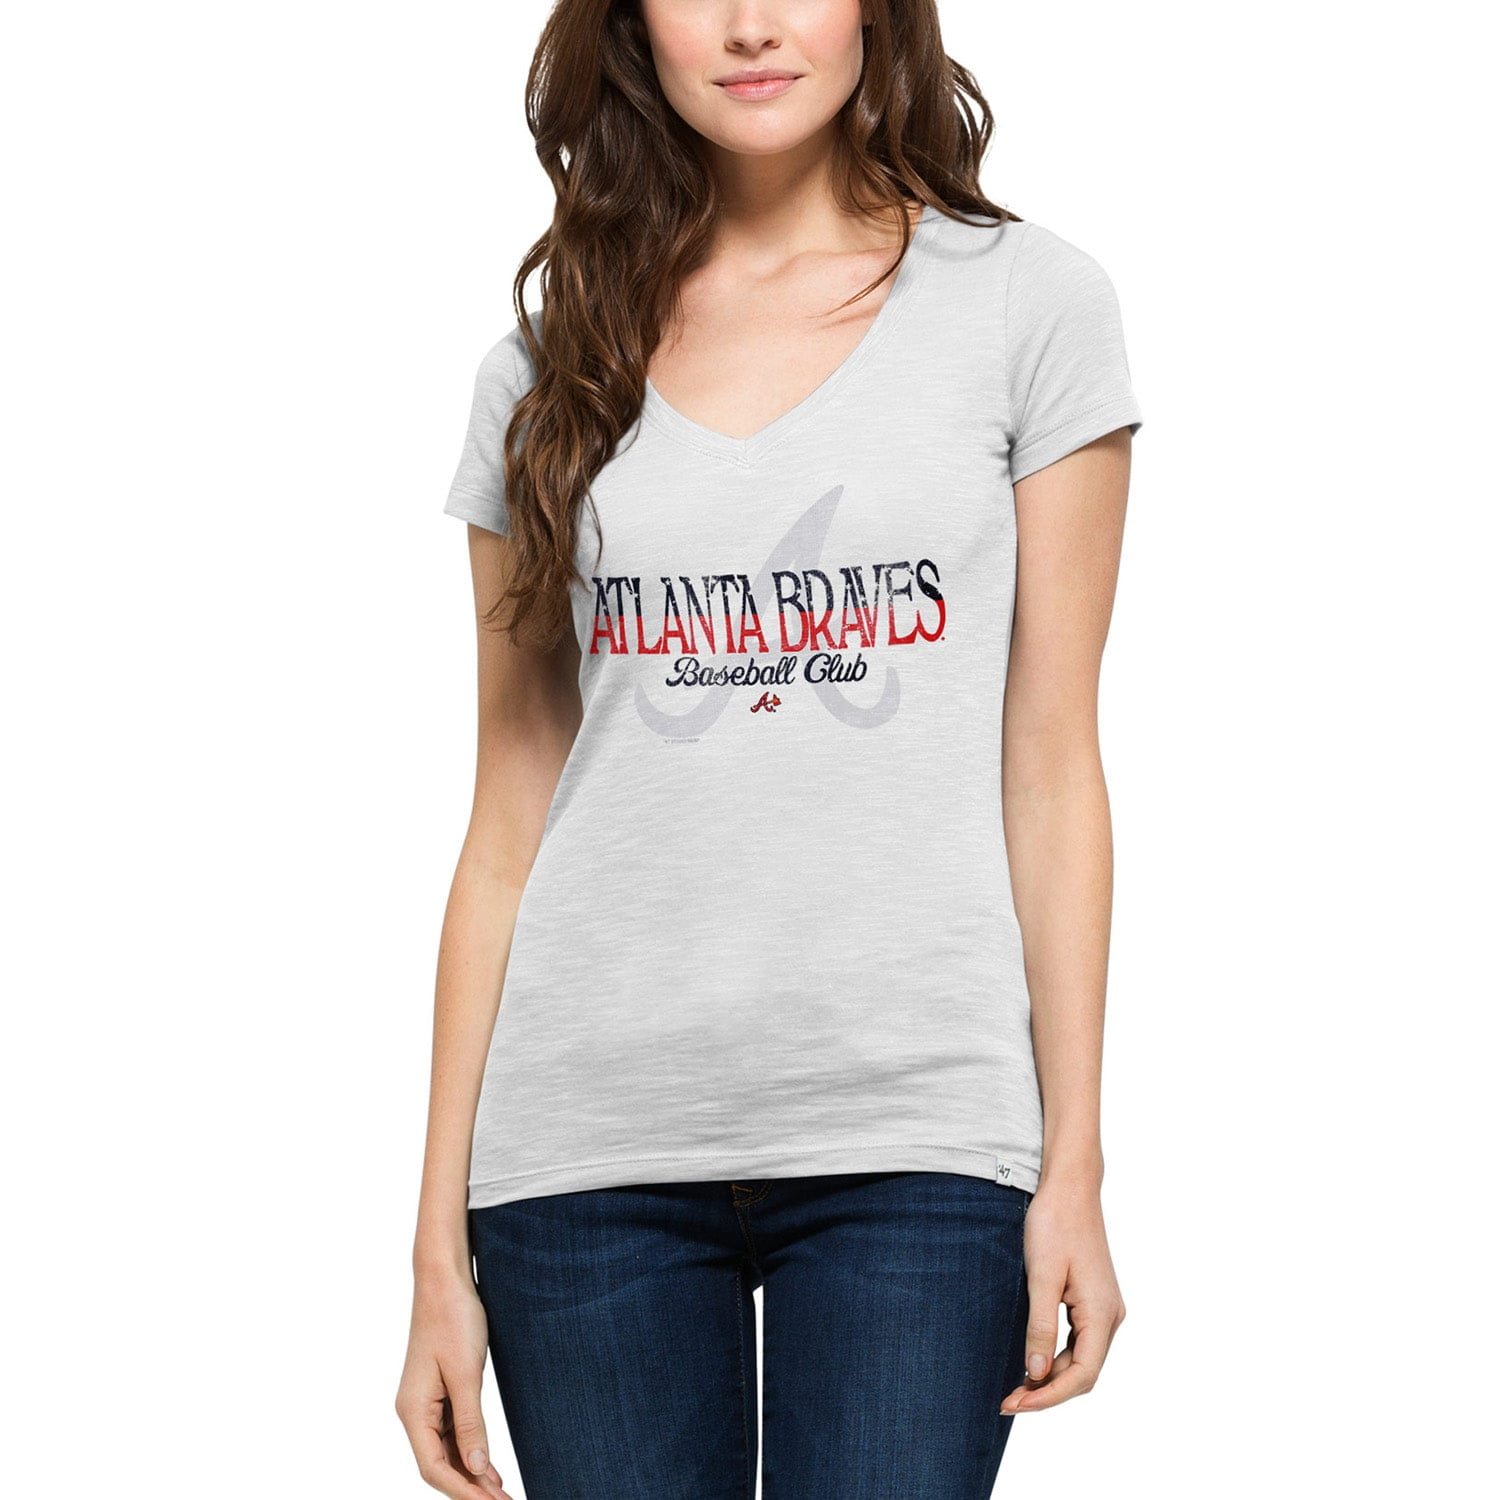 Atlanta Braves '47 Women's Stars & Stripes Scrum V-Neck T-Shirt - White ...